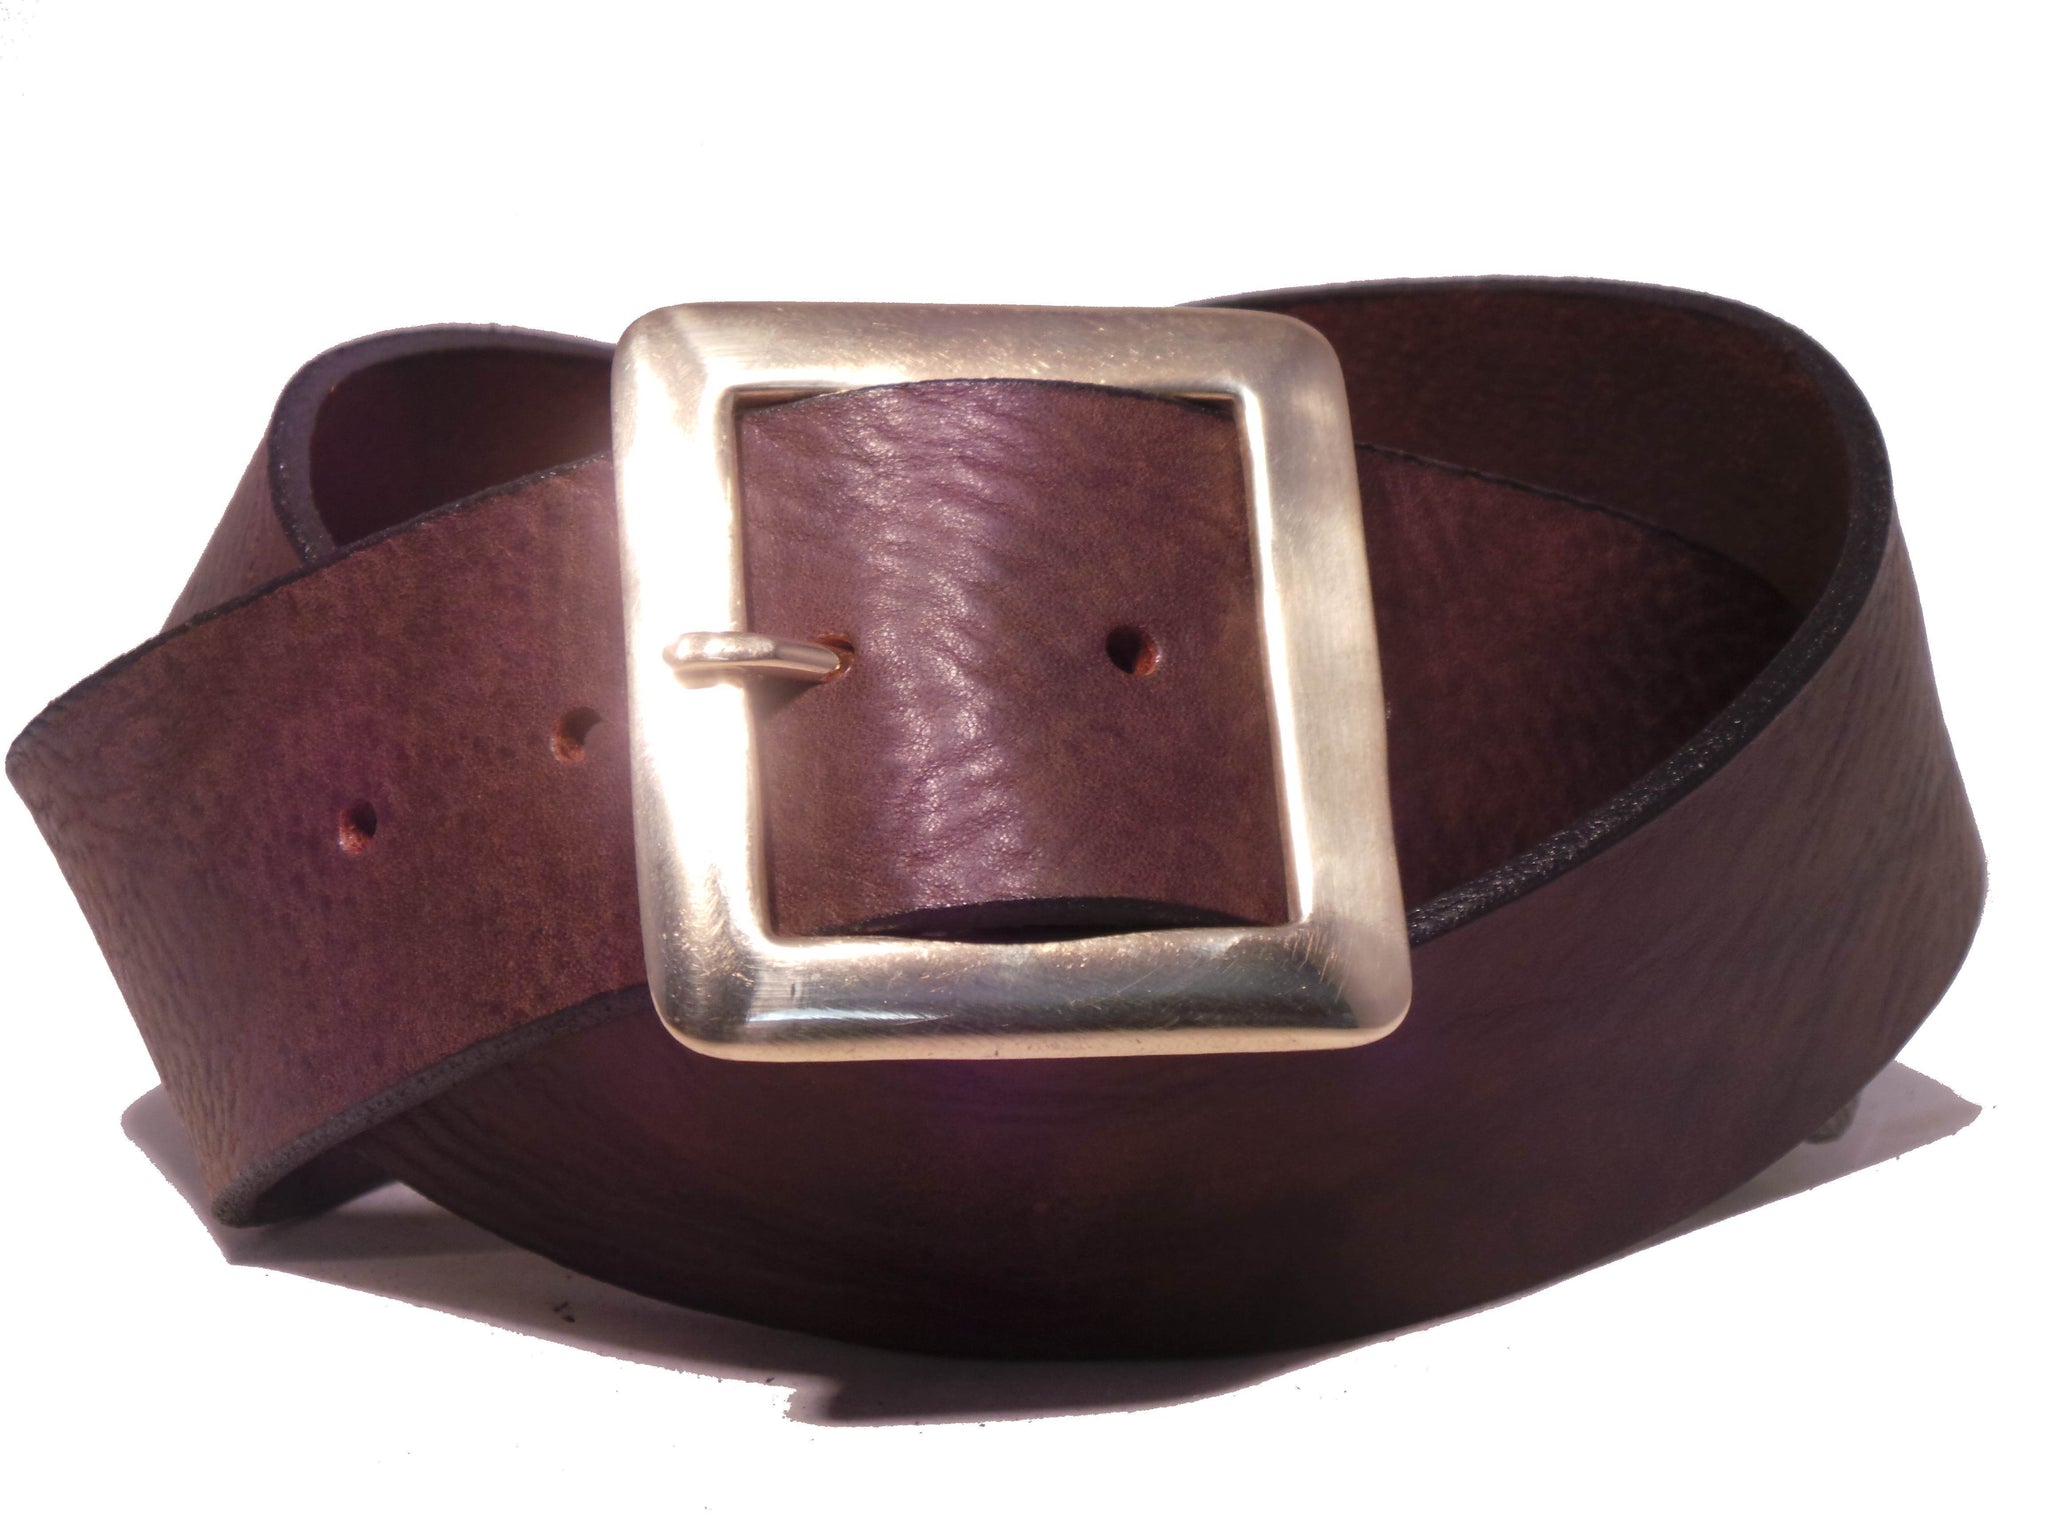 Belts For Men - Buy Belts For Men Online Starting at Just ₹75